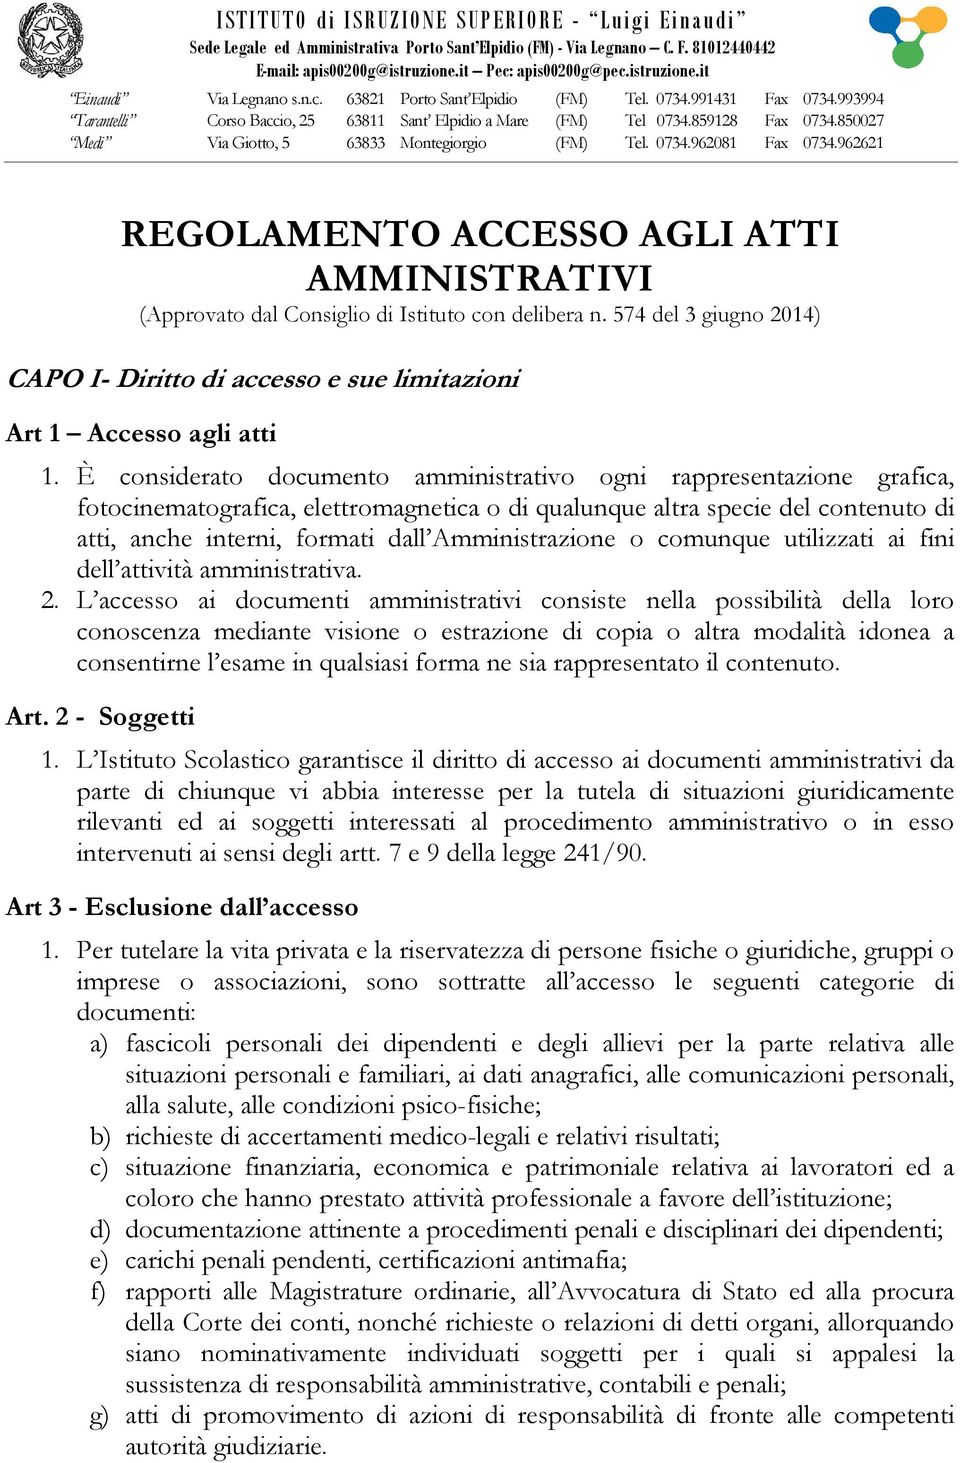 850027 Medi Via Giotto, 5 63833 Montegiorgio (FM) Tel. 0734.962081 Fax 0734.962621 REGOLAMENTO ACCESSO AGLI ATTI AMMINISTRATIVI (Approvato dal Consiglio di Istituto con delibera n.